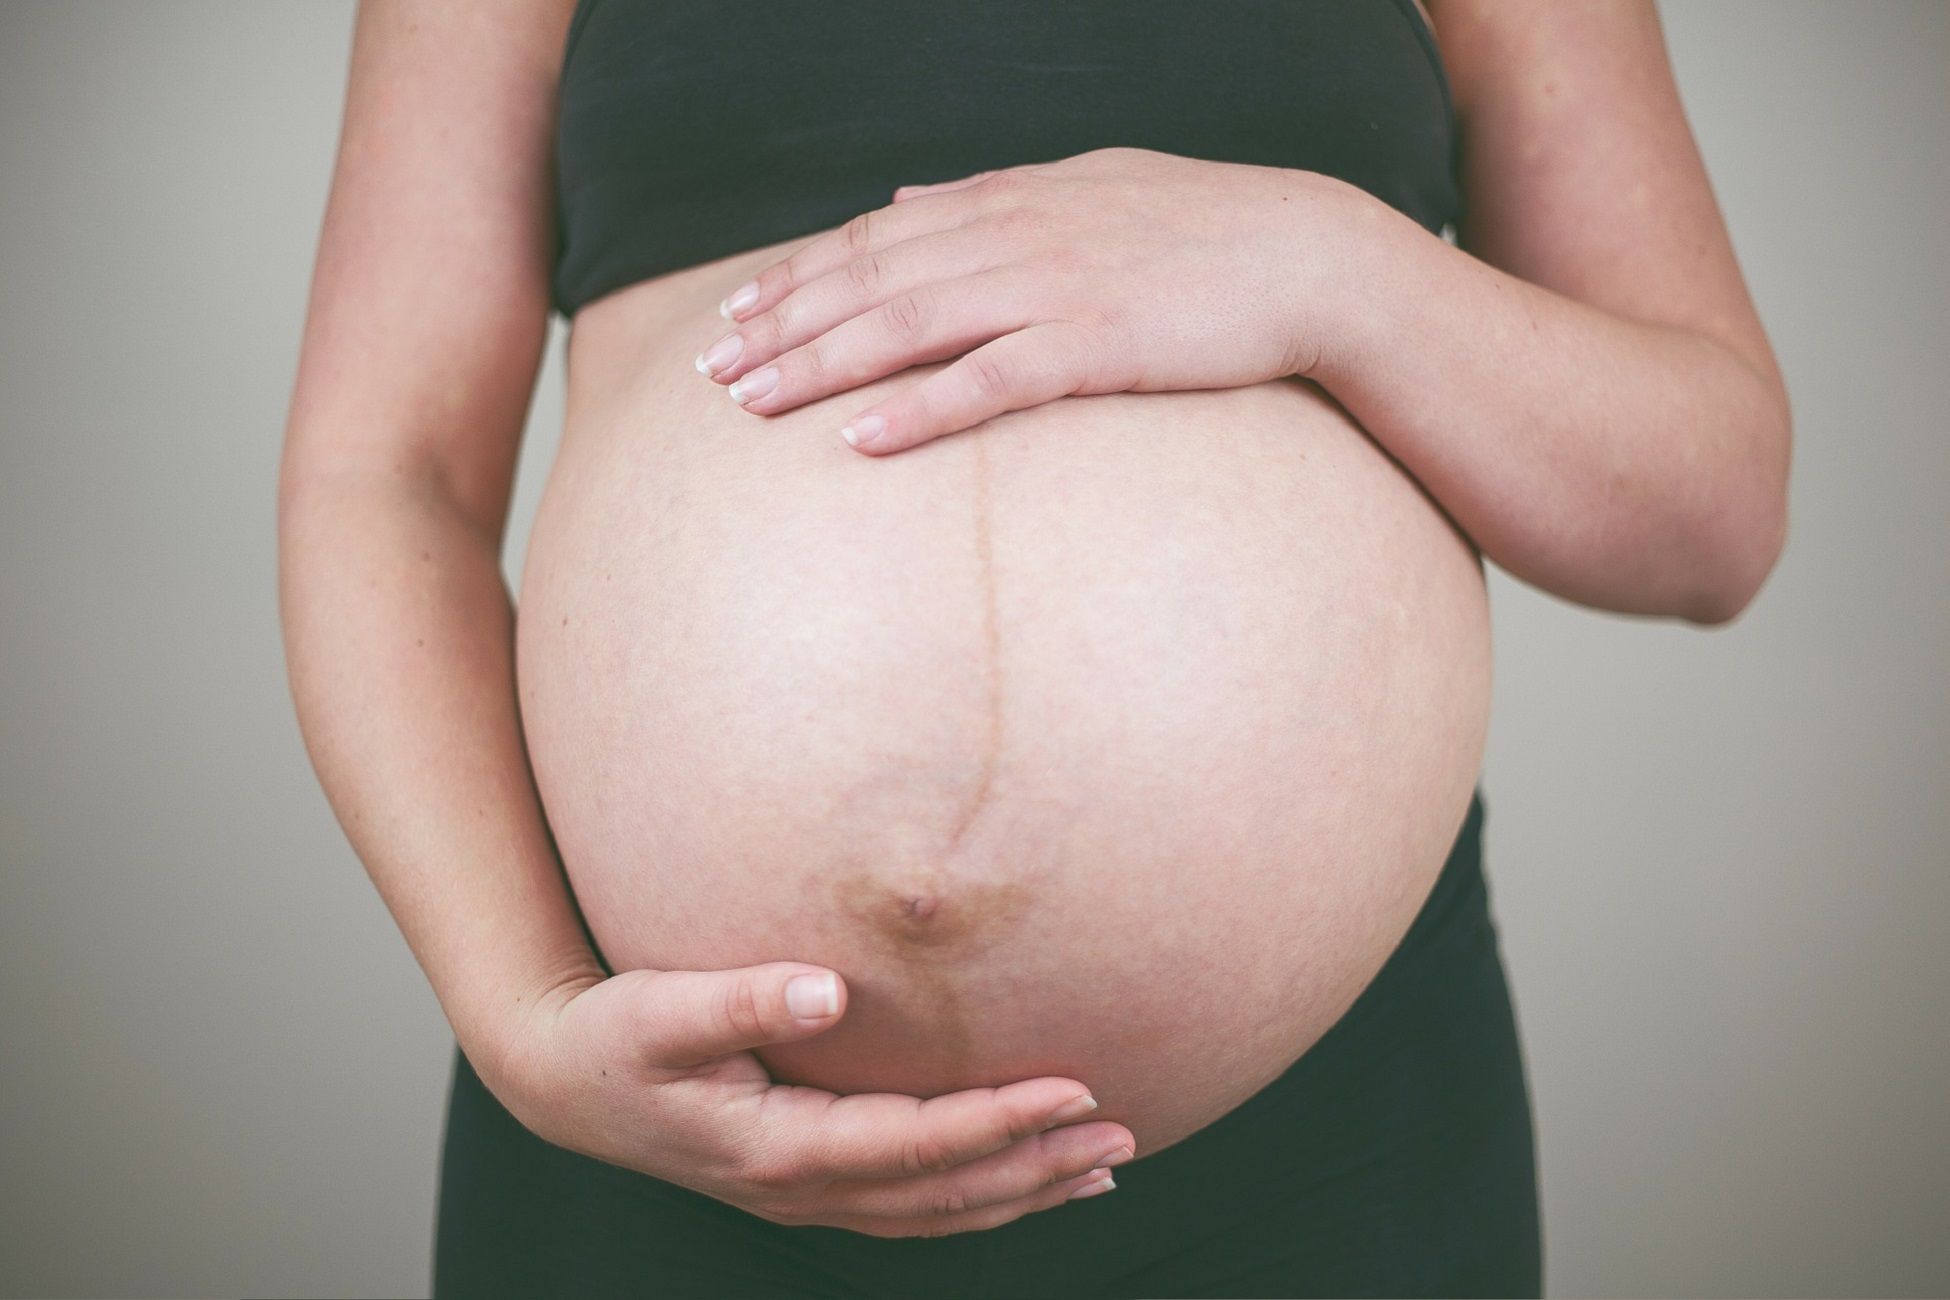 Dona embarassada / Pixabay